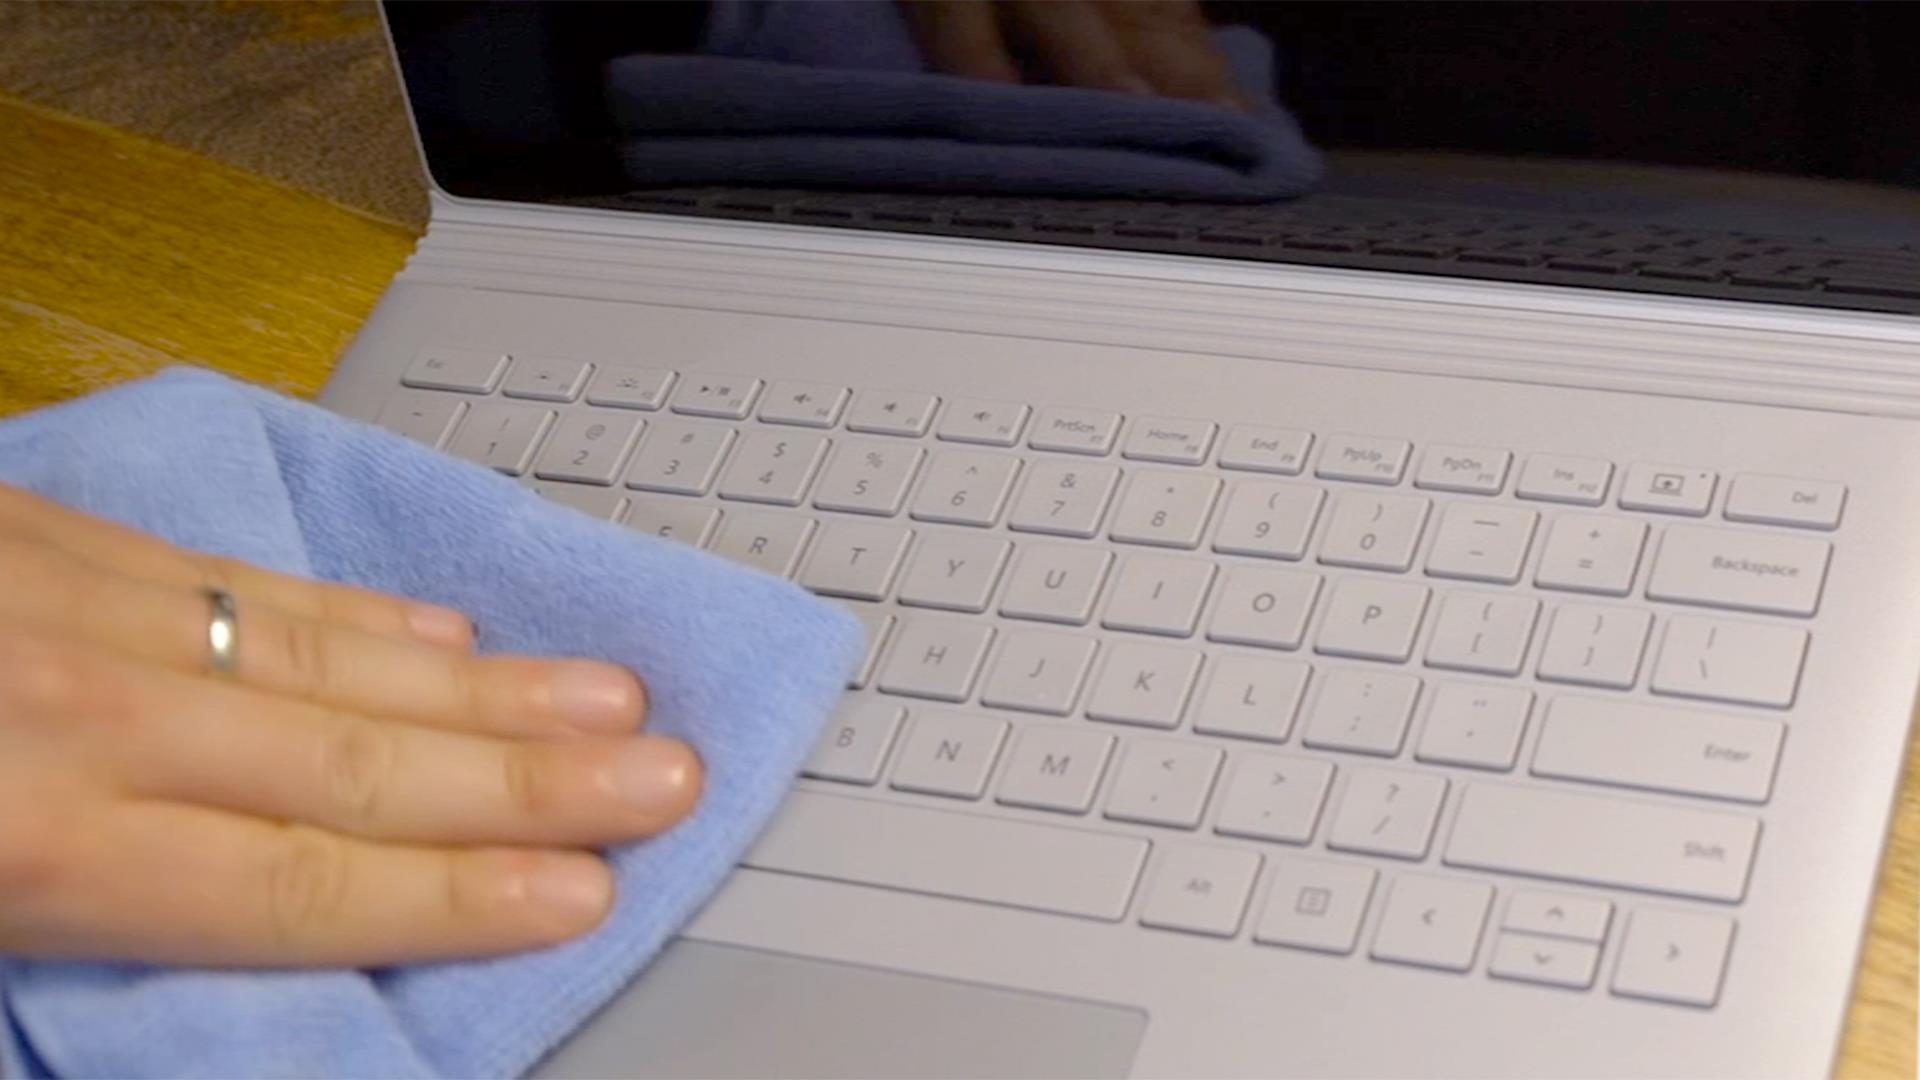 Что можно делать на ноутбуке. Салфетка для ноутбука на клавиатуру. MACBOOK протерлась клавиатура ноутбука. Защитная салфетка на клавиатуру. Протёр тряпочкой клавиатуру.